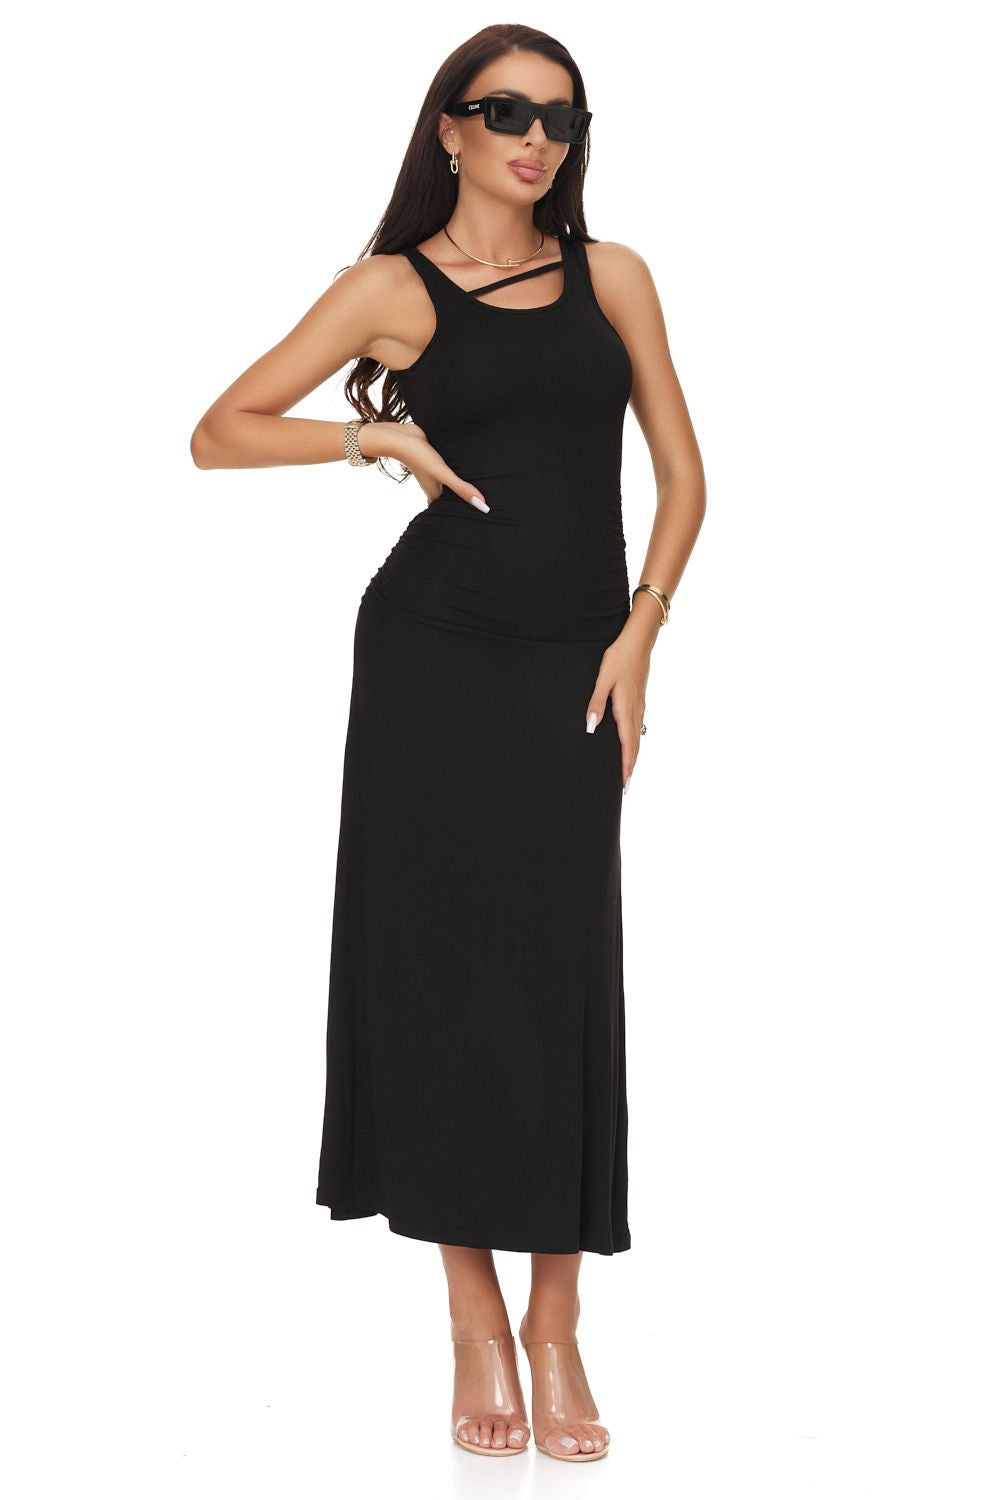 Long black dress for women Zebrasi Bogas